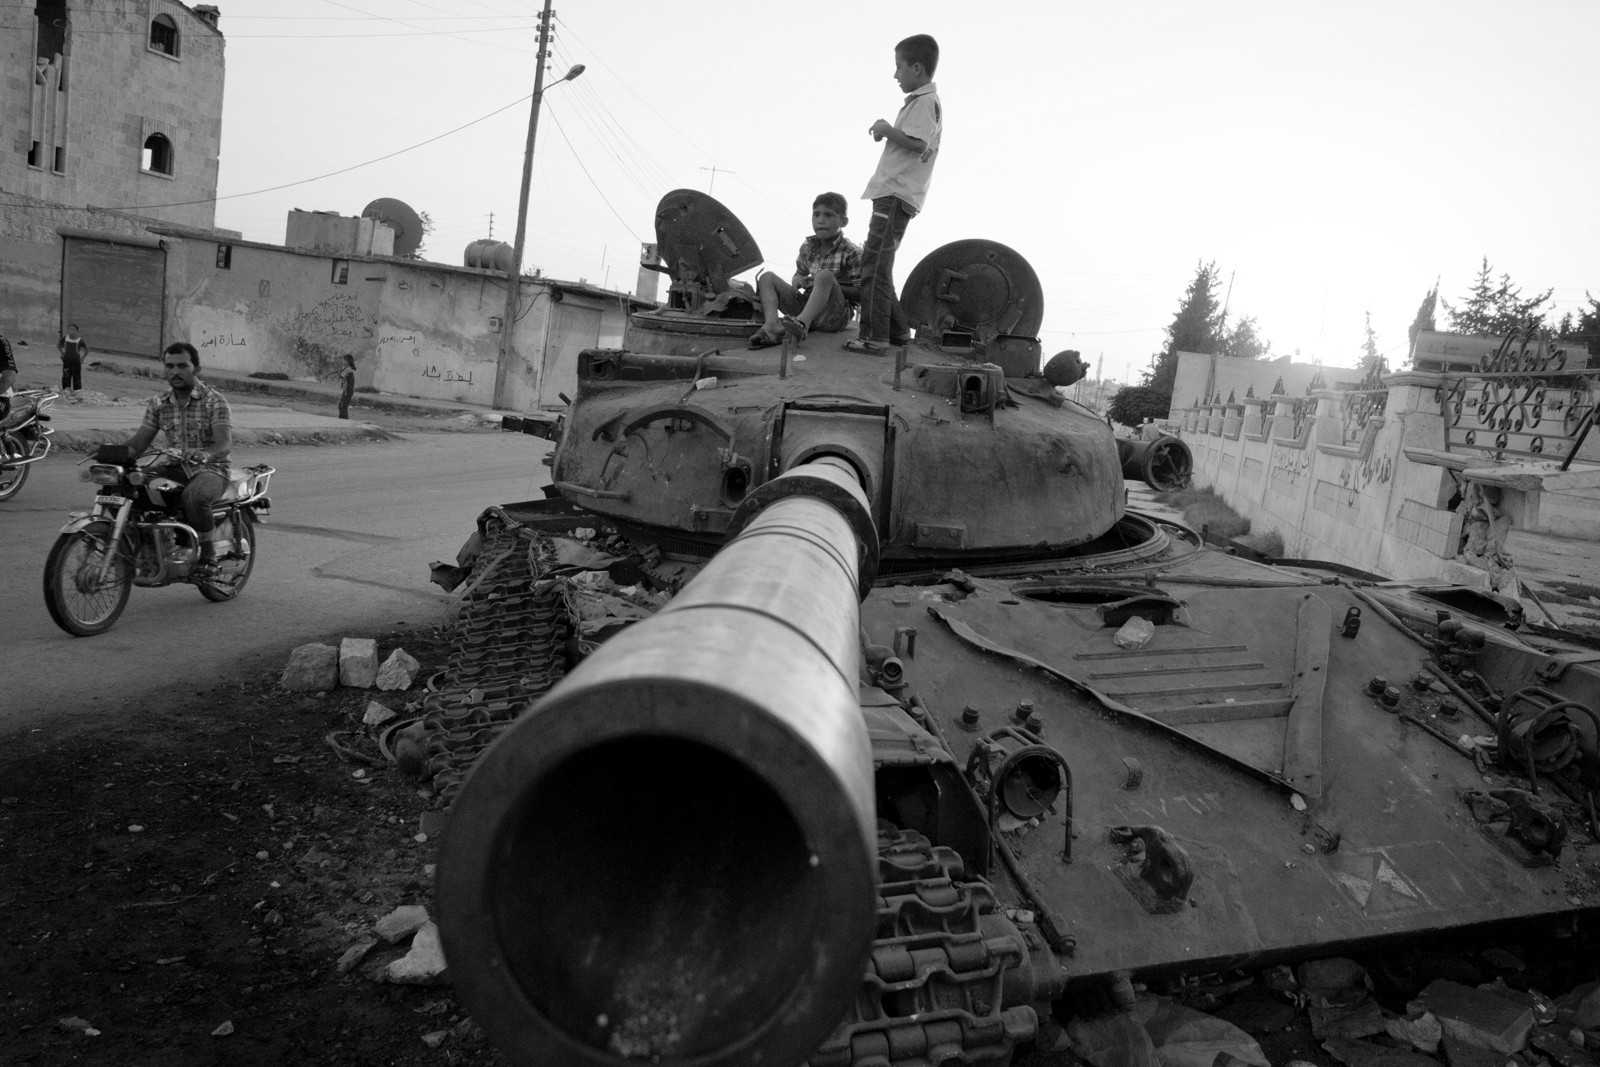 Jugando entre los tanques de Bashar